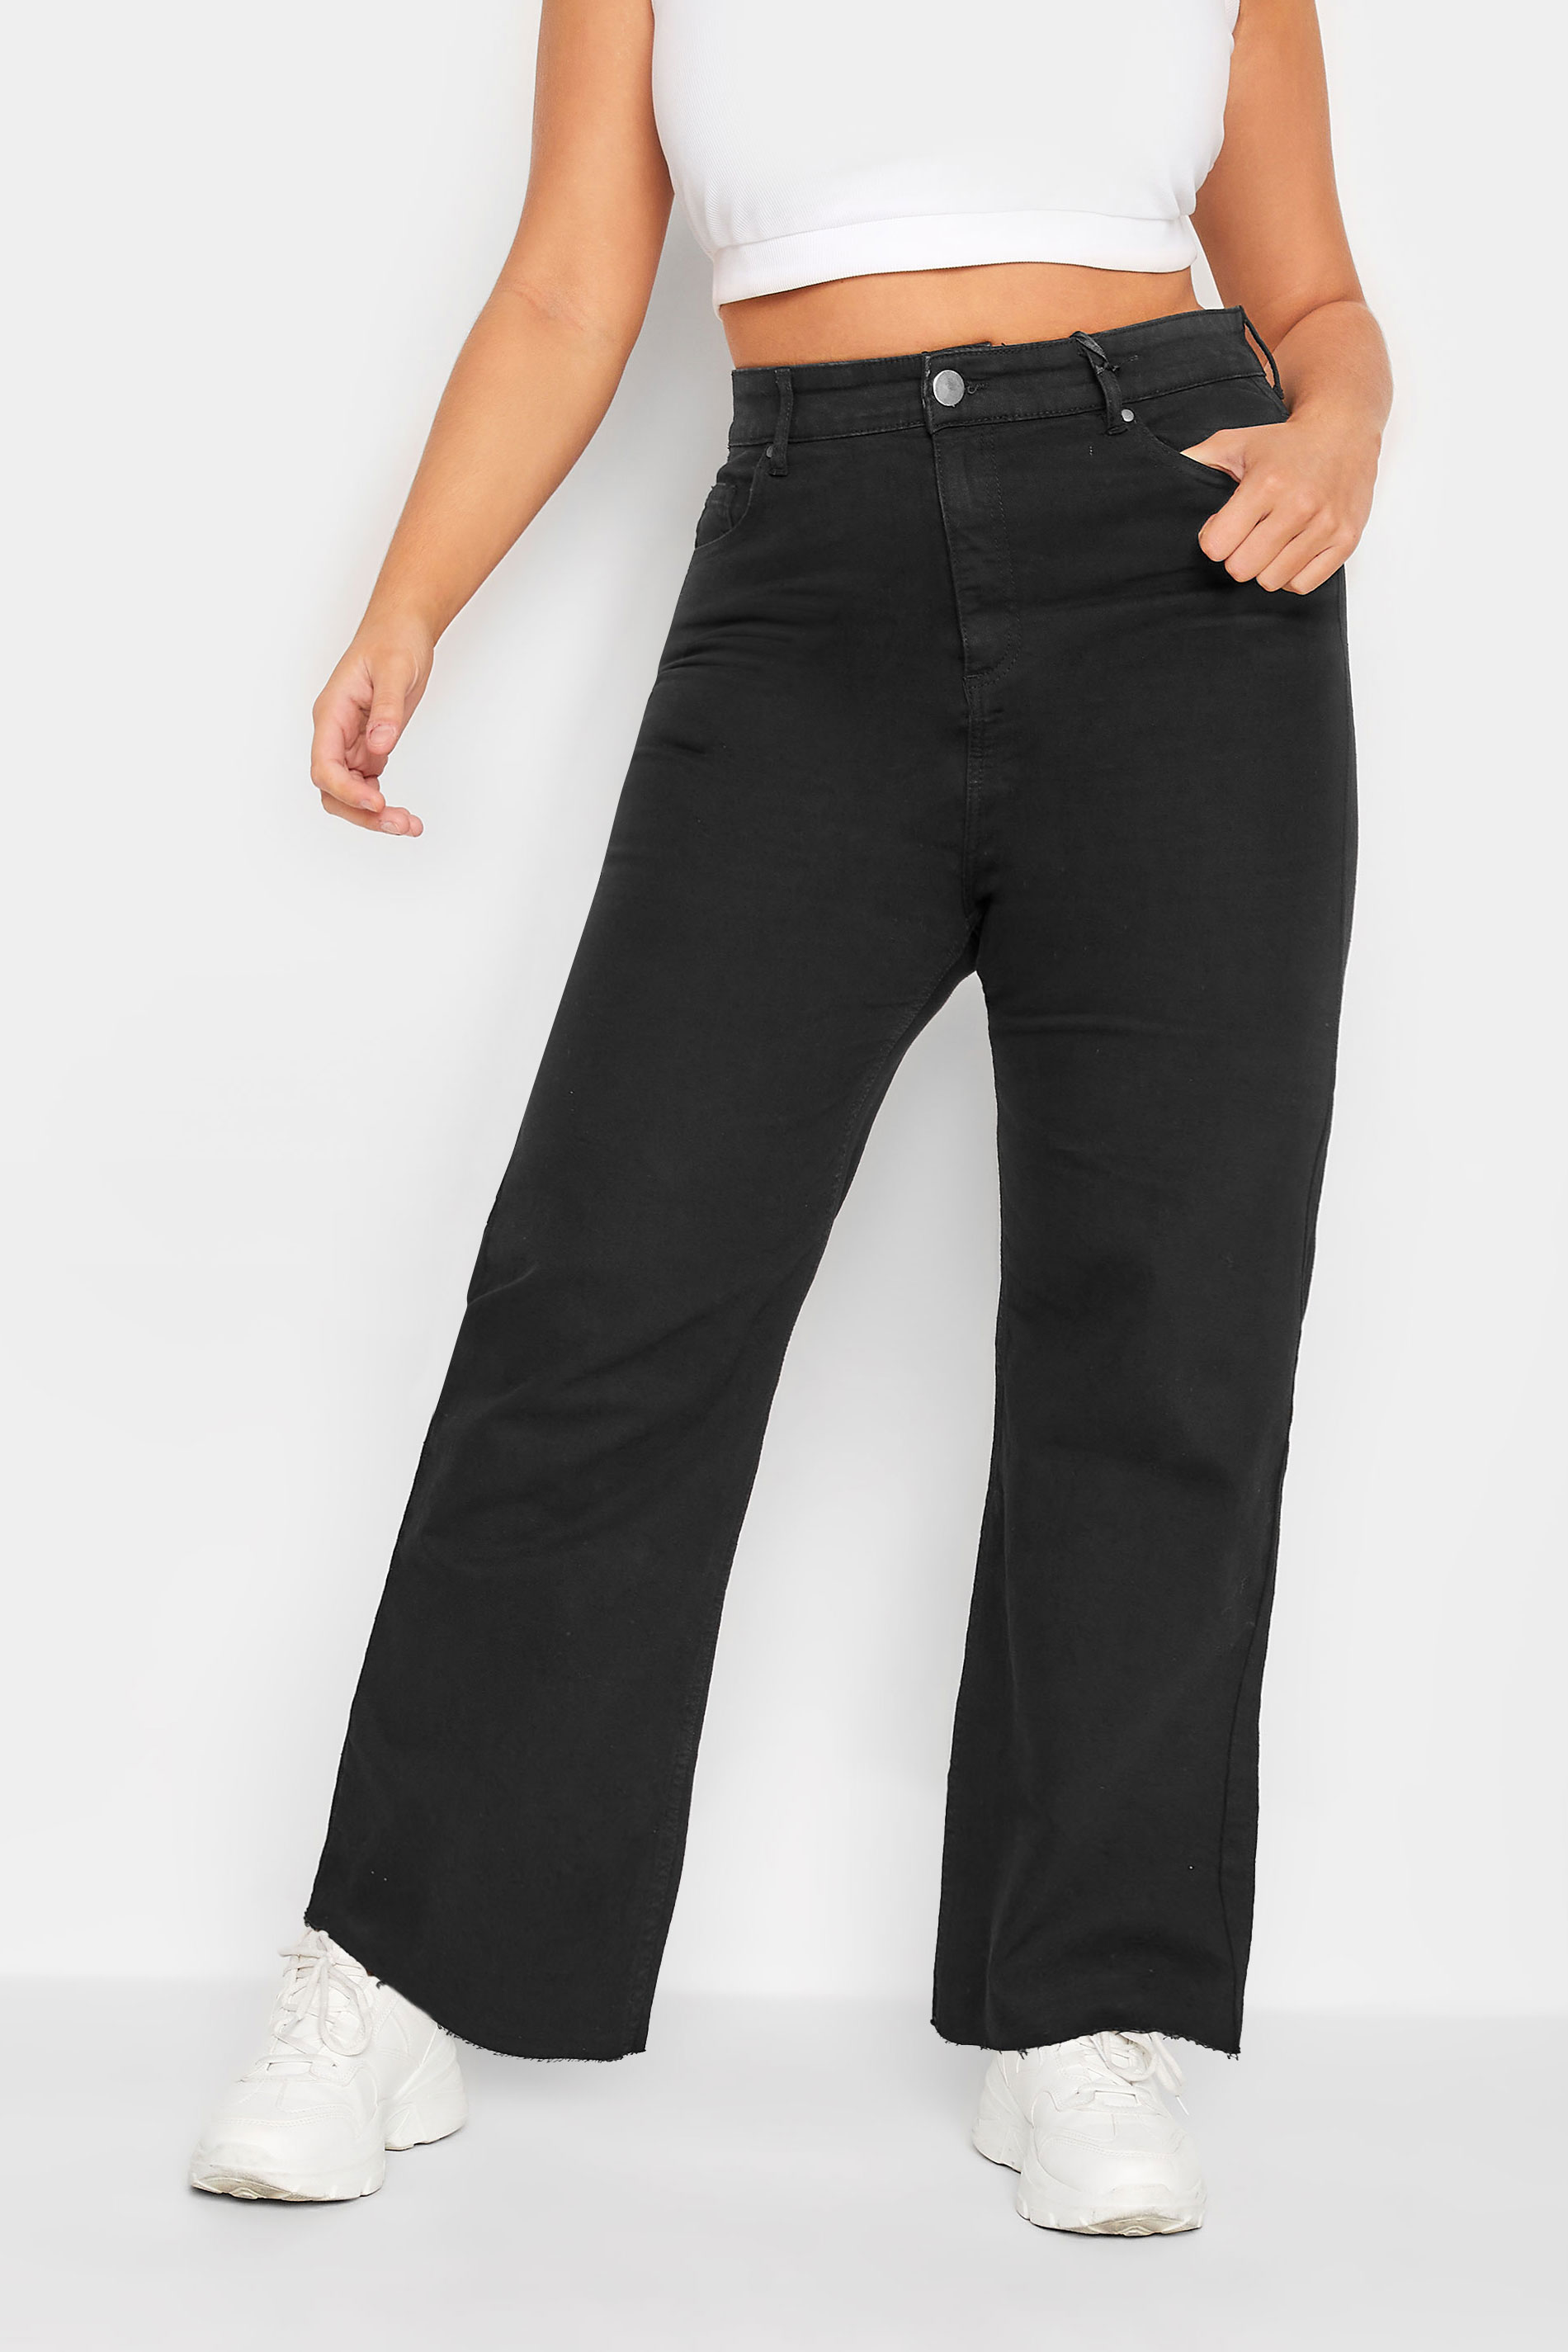 Jeans for Women Plus Size Women's Jeans Plus Zipper Fly Wide Leg Jeans  Fashion Plus Size Denim Pants Jeans (Color : Black, Size : X-Large) at   Women's Jeans store